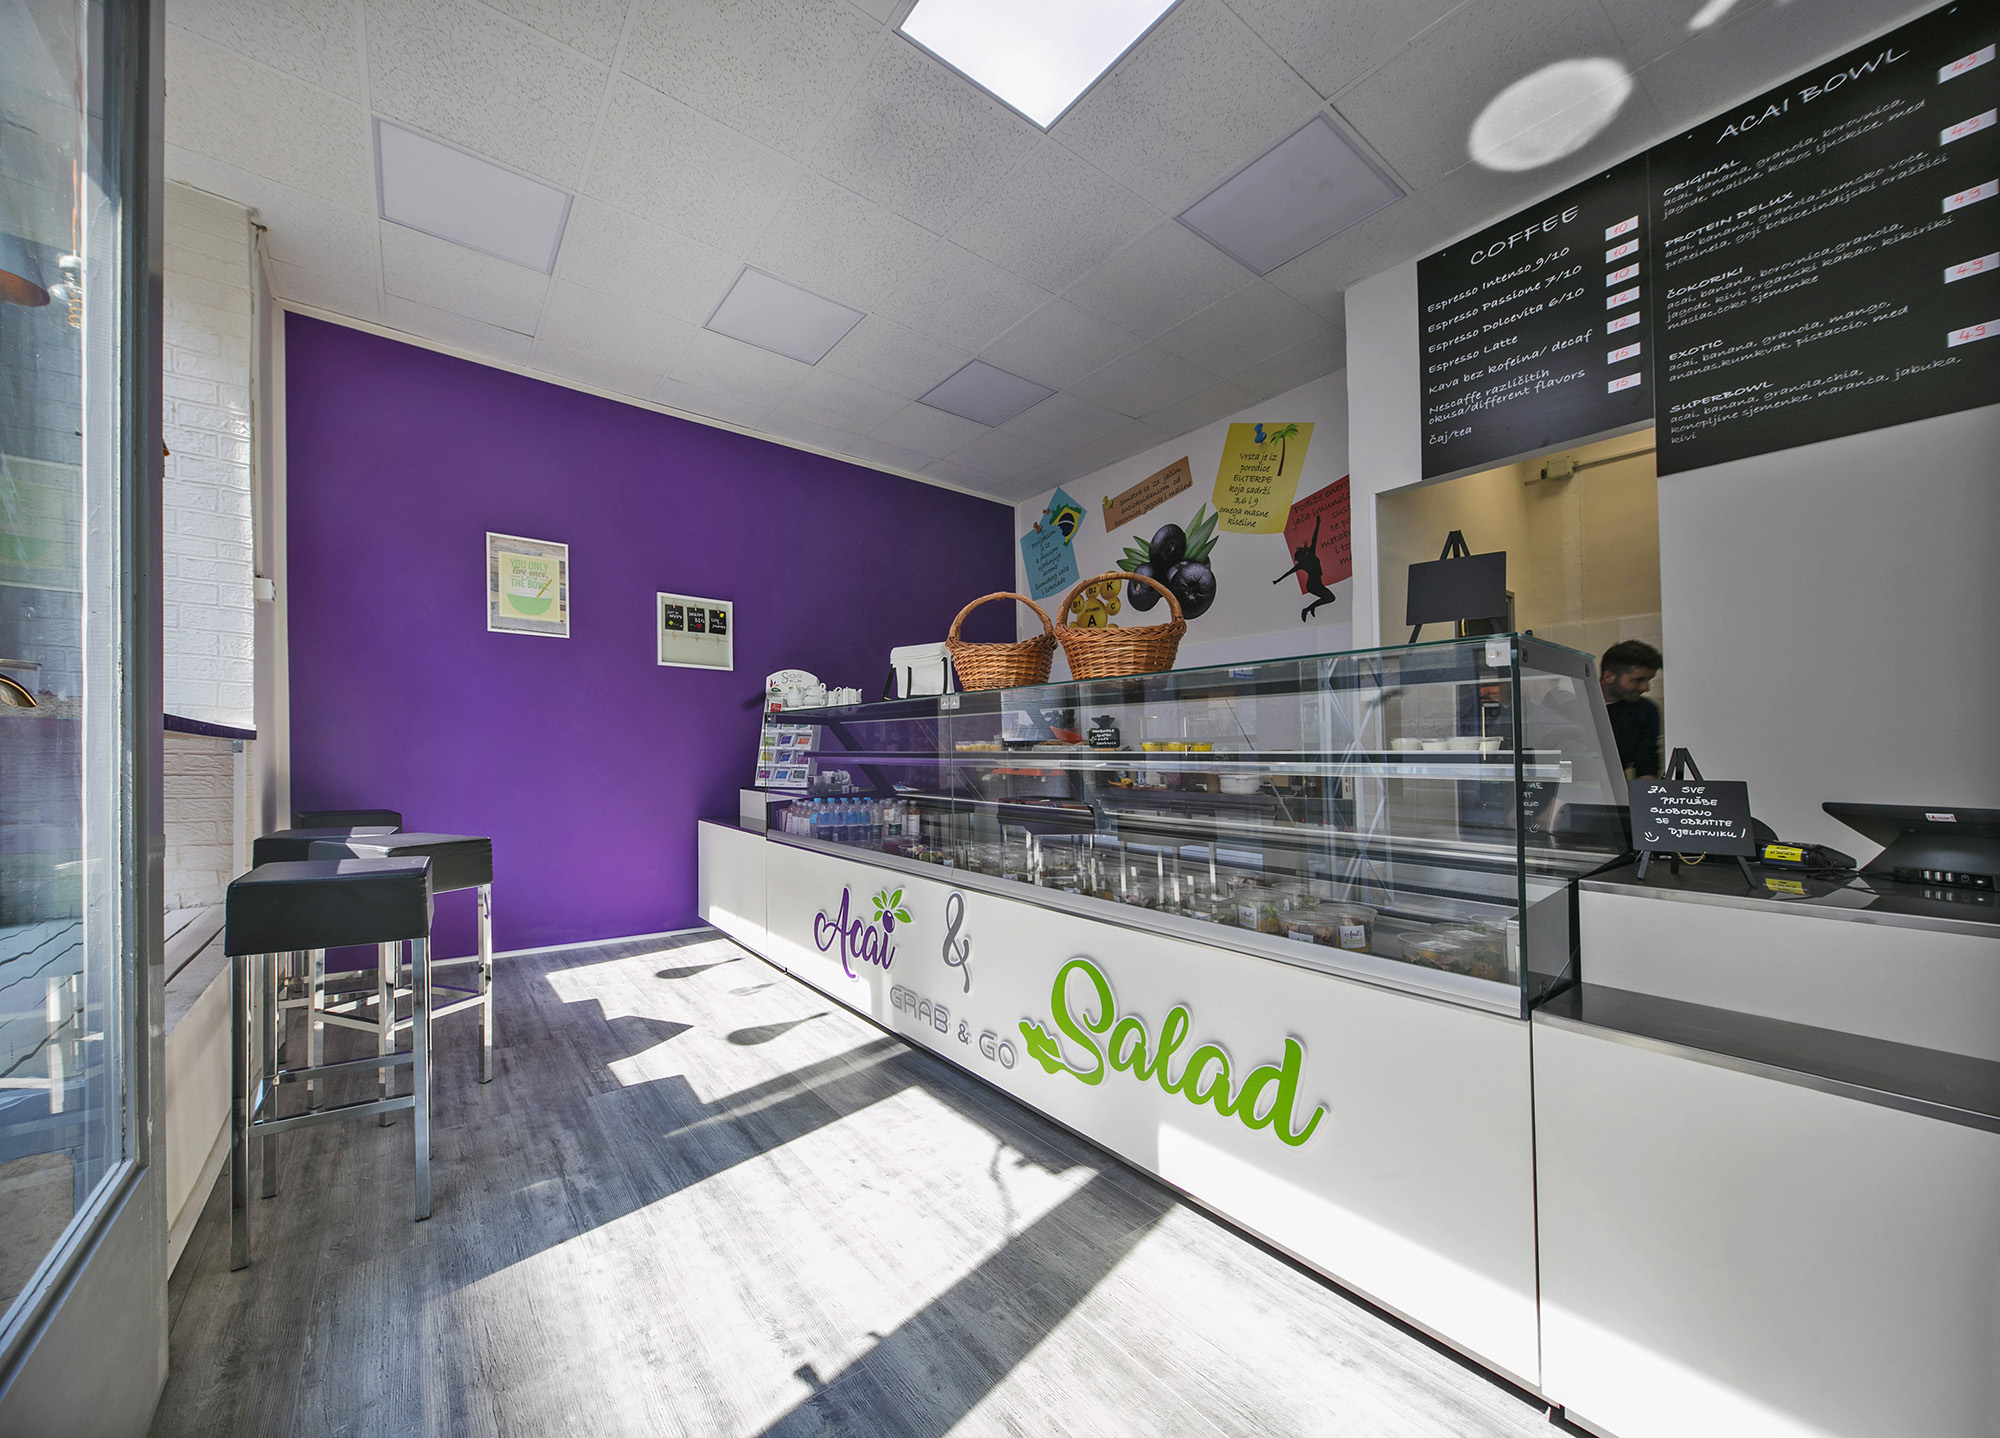 Zdravi fast food Acai & Salad bar otvorio se 3. travnja na adresi Ilica 126